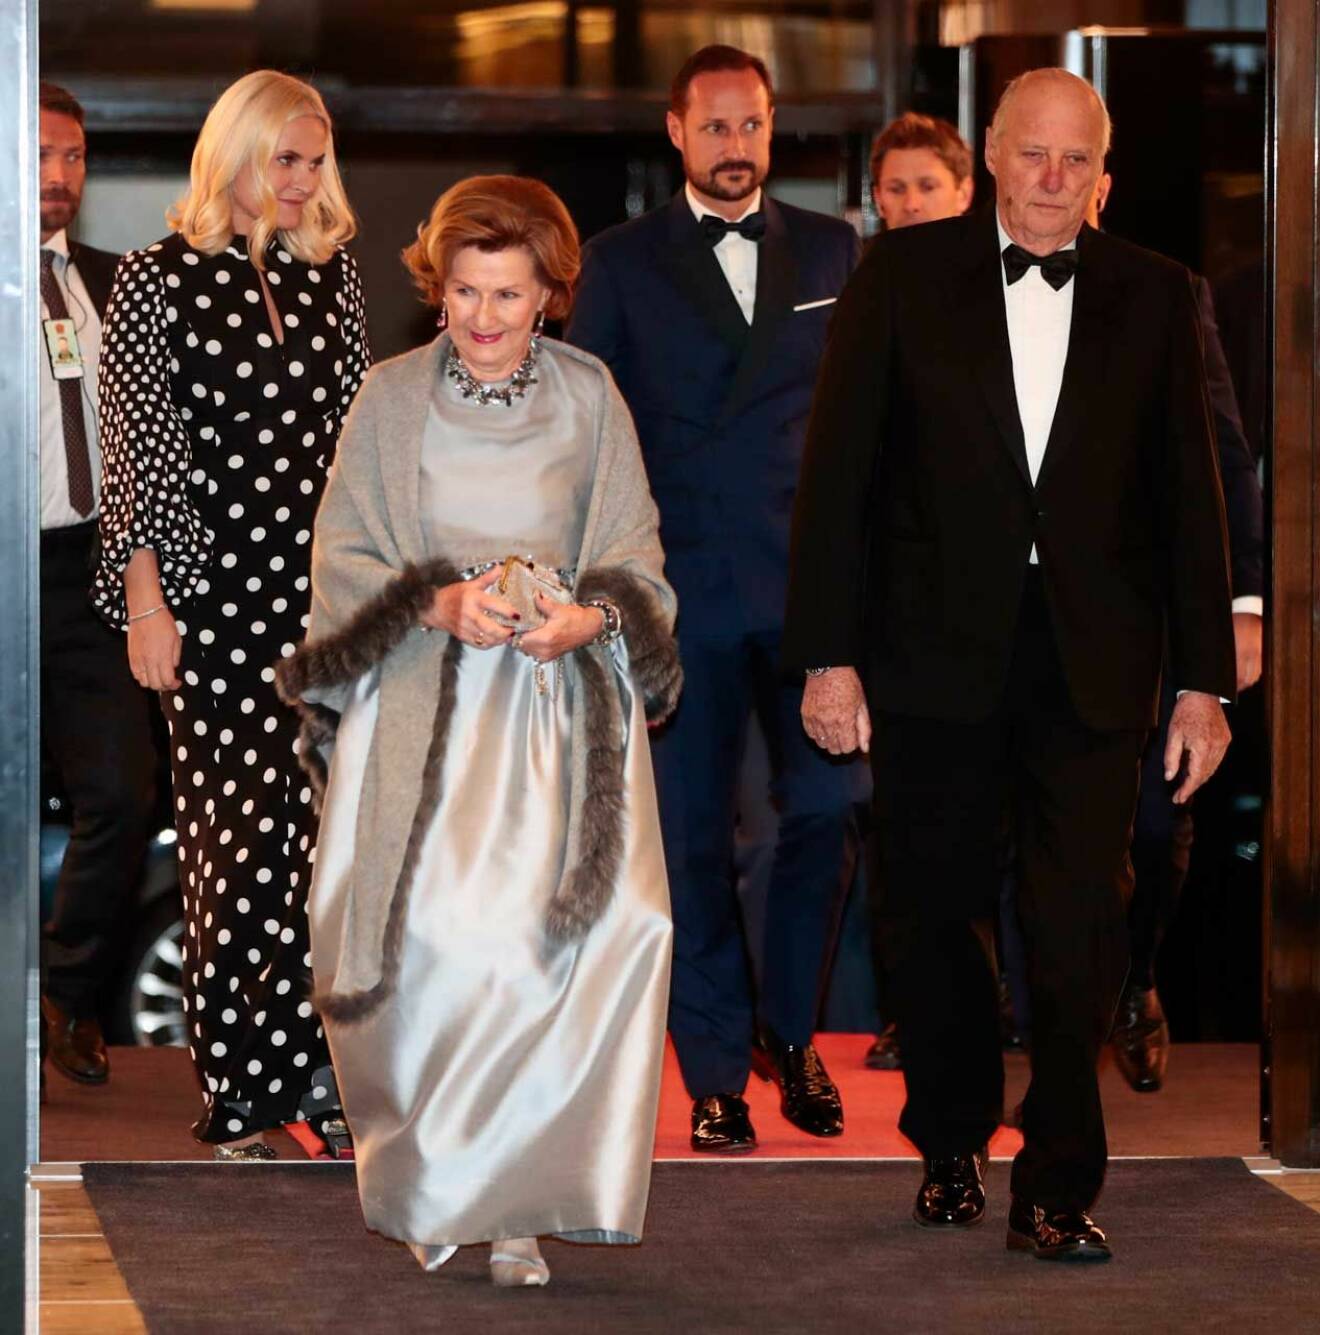 Den norska kungafamiljen med kung Harald och drottning Sonja i spetsen, kommer till Grand hotel för middagen.